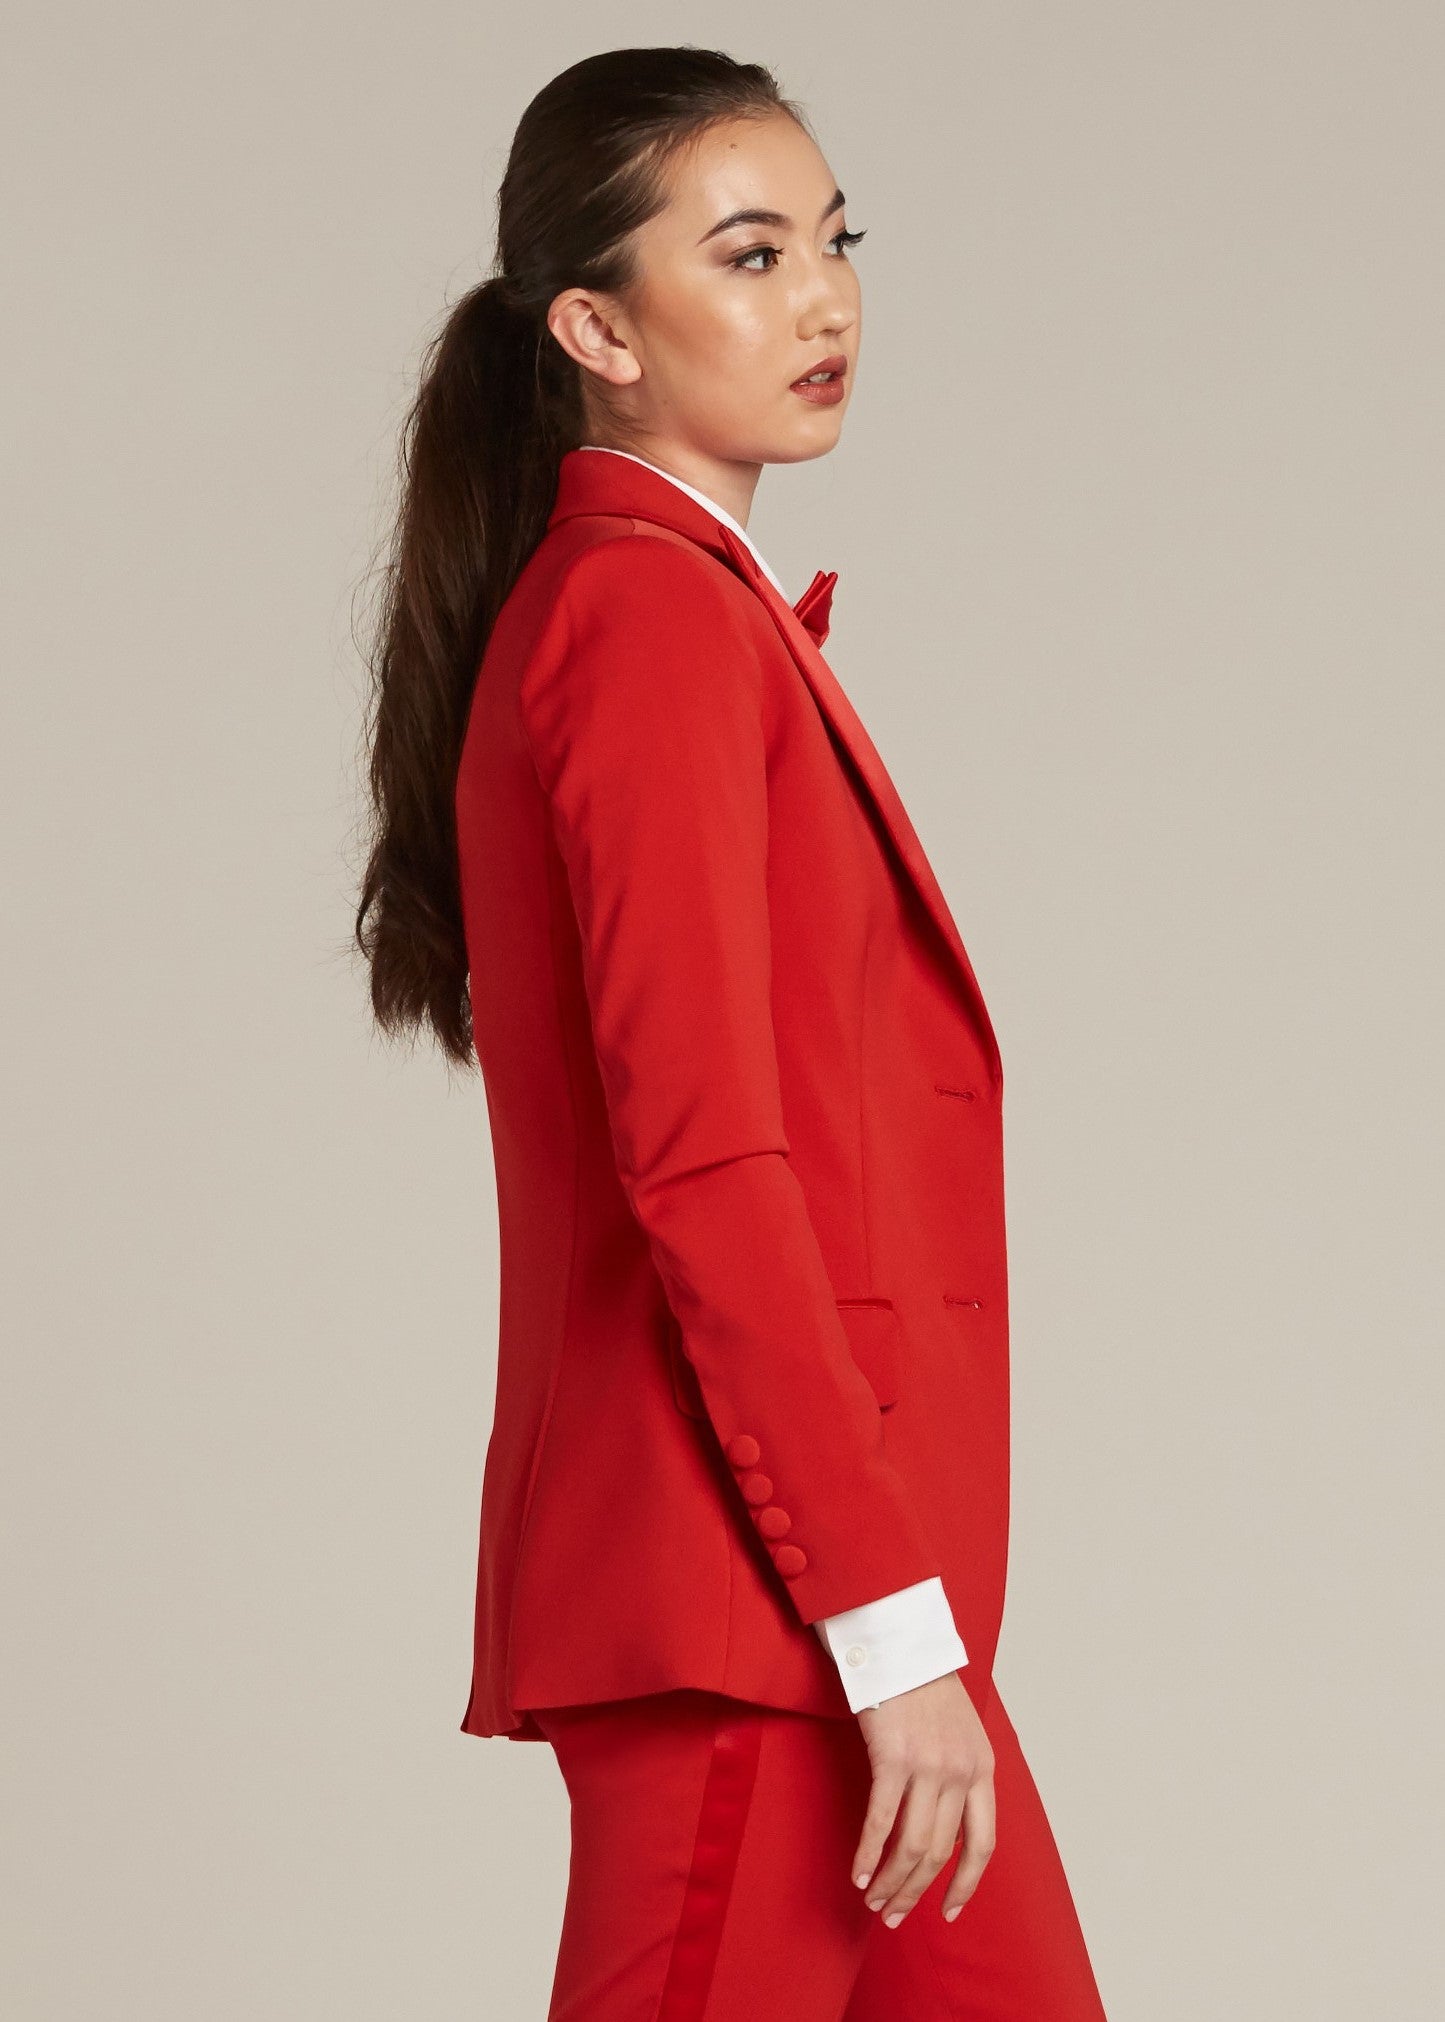 Calsunbaby Men Tuxedo Suit Gentleman Dance Sequins Coat Blazer Jacket Red M  - Walmart.com